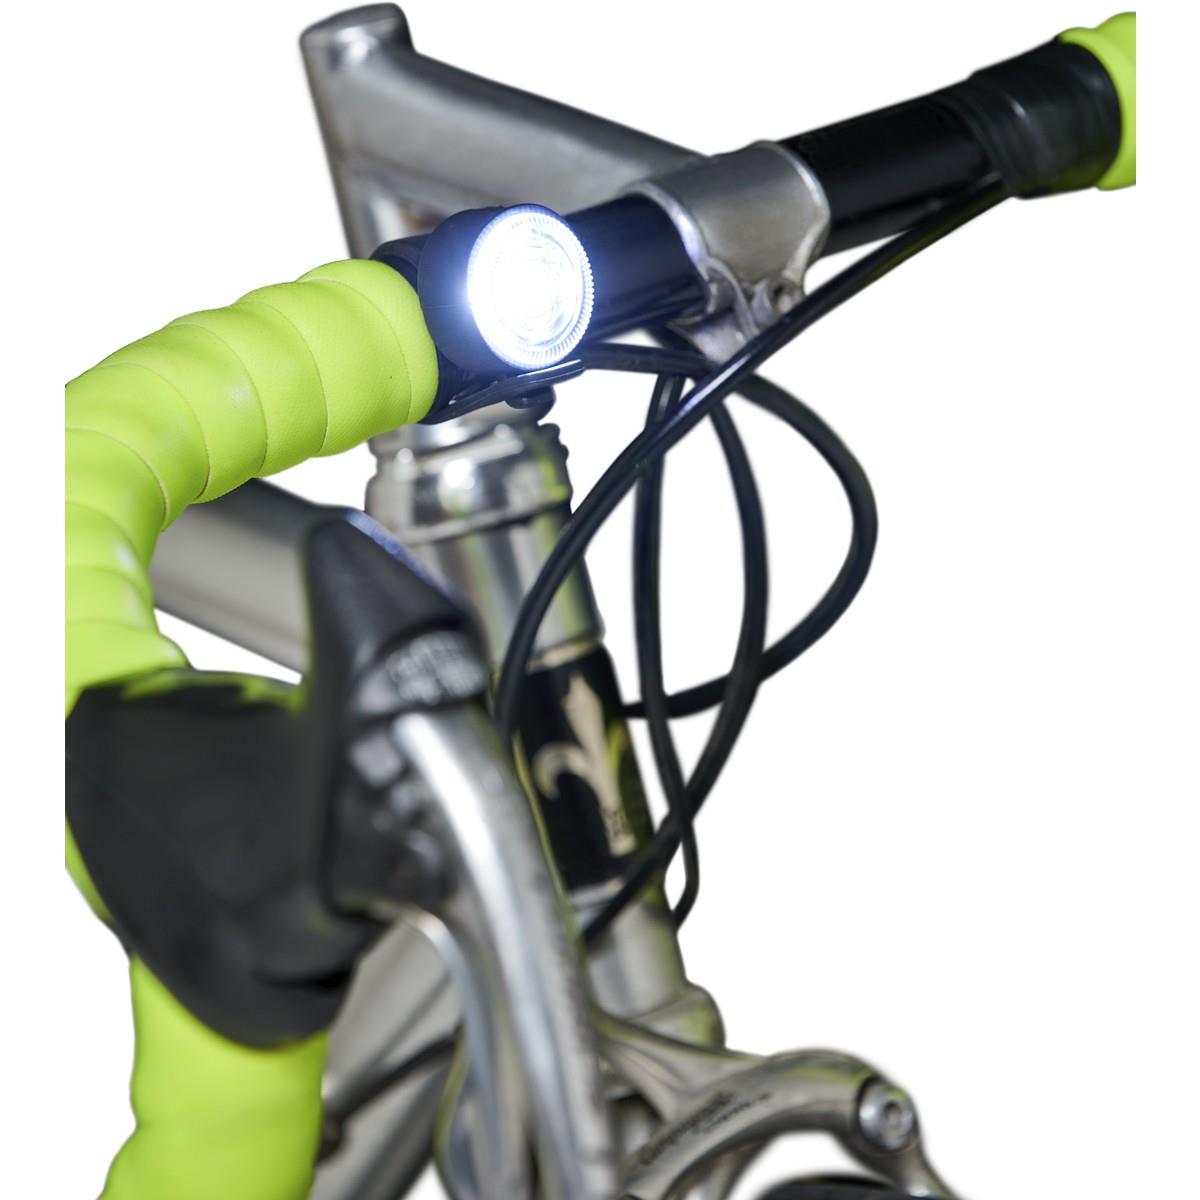 Leuchtenset Vorne und Hinten für Fahrräder